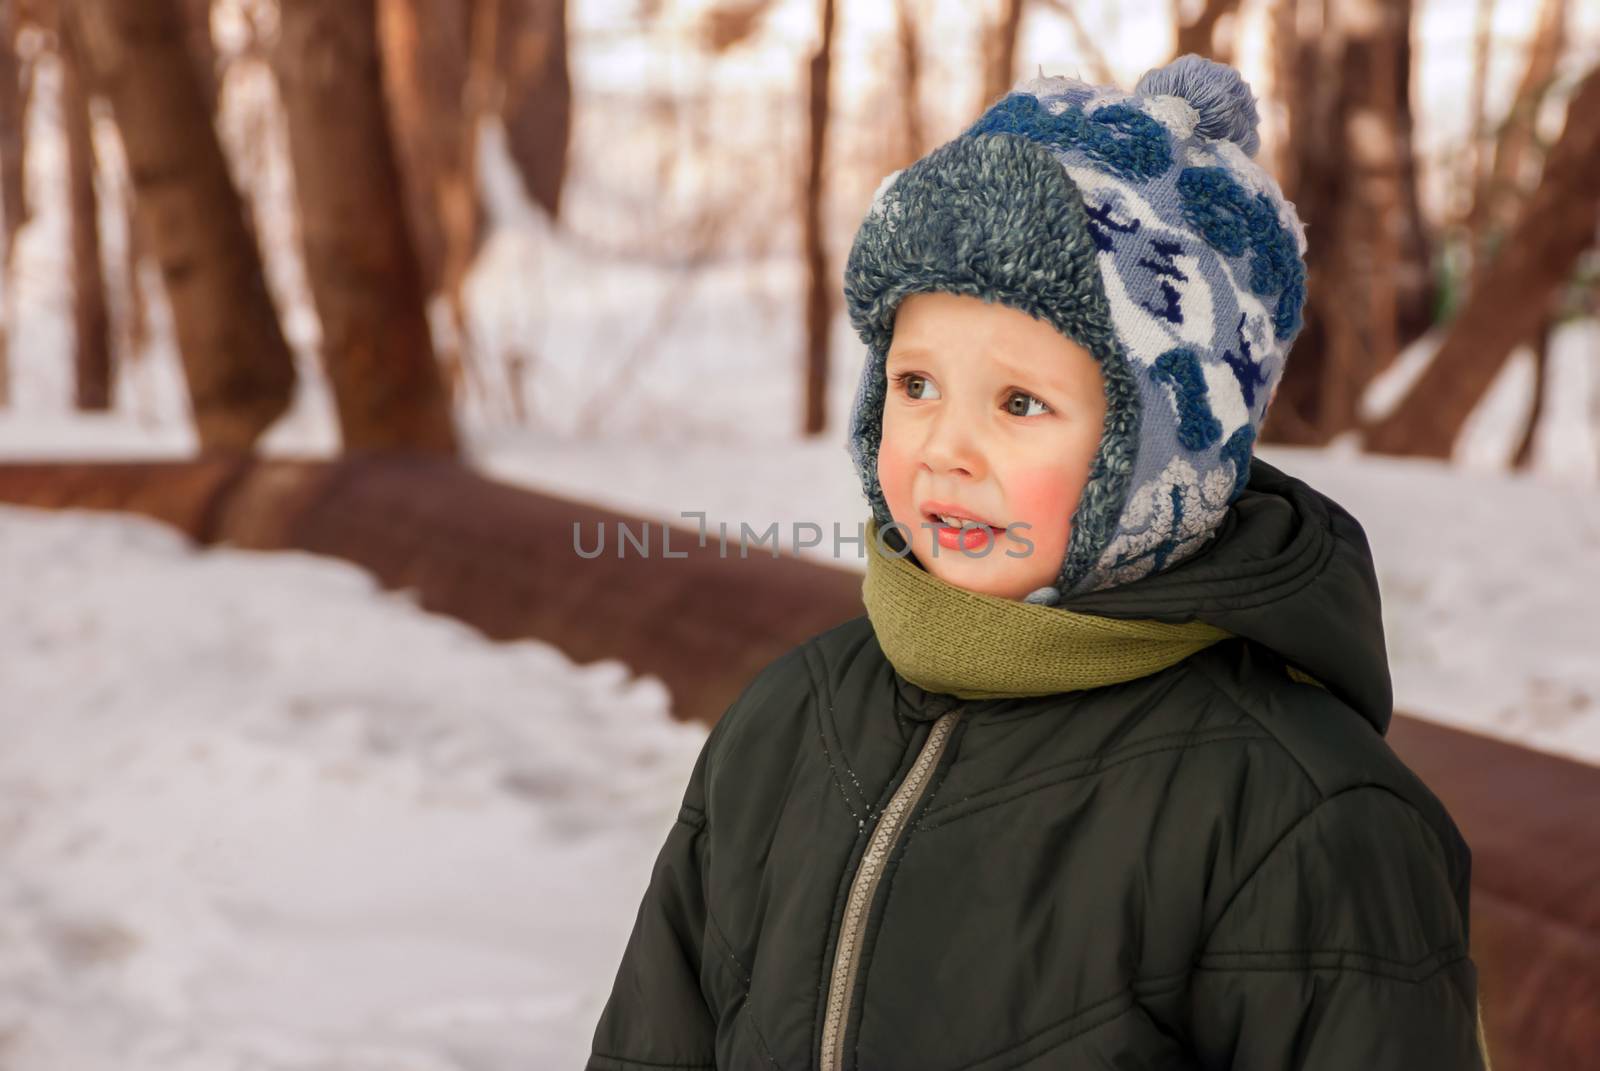 Little boy outdoors in winter by negativ